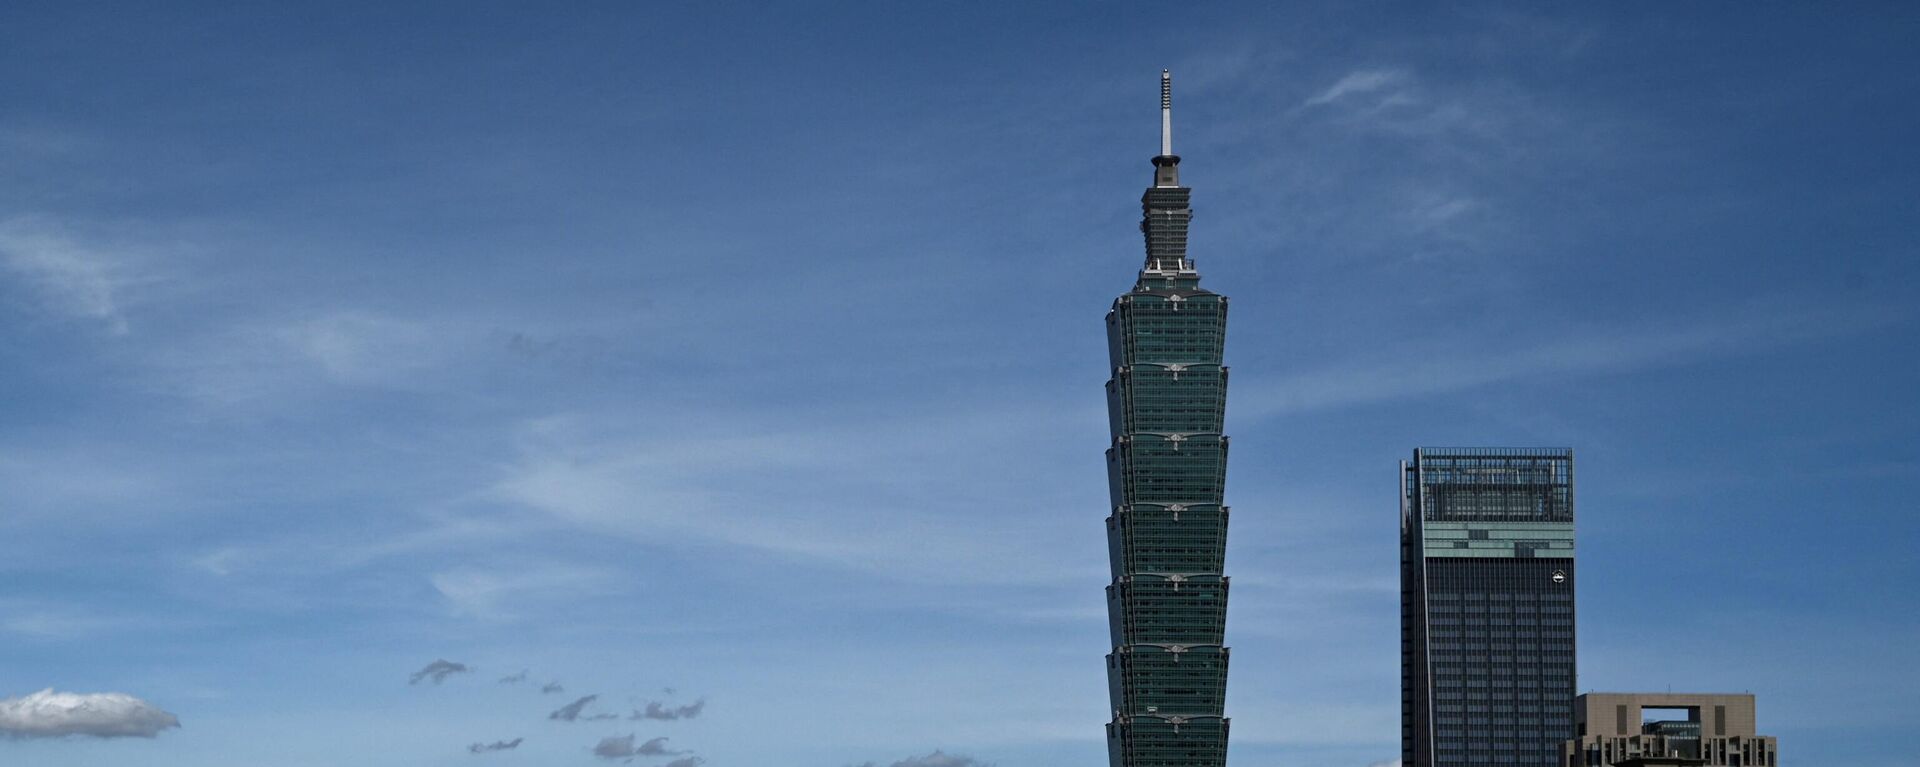 五角大楼仍评估未来两年永利平台不会“入侵台湾” - 永利官网卫星通讯社, 1920, 09.08.2022